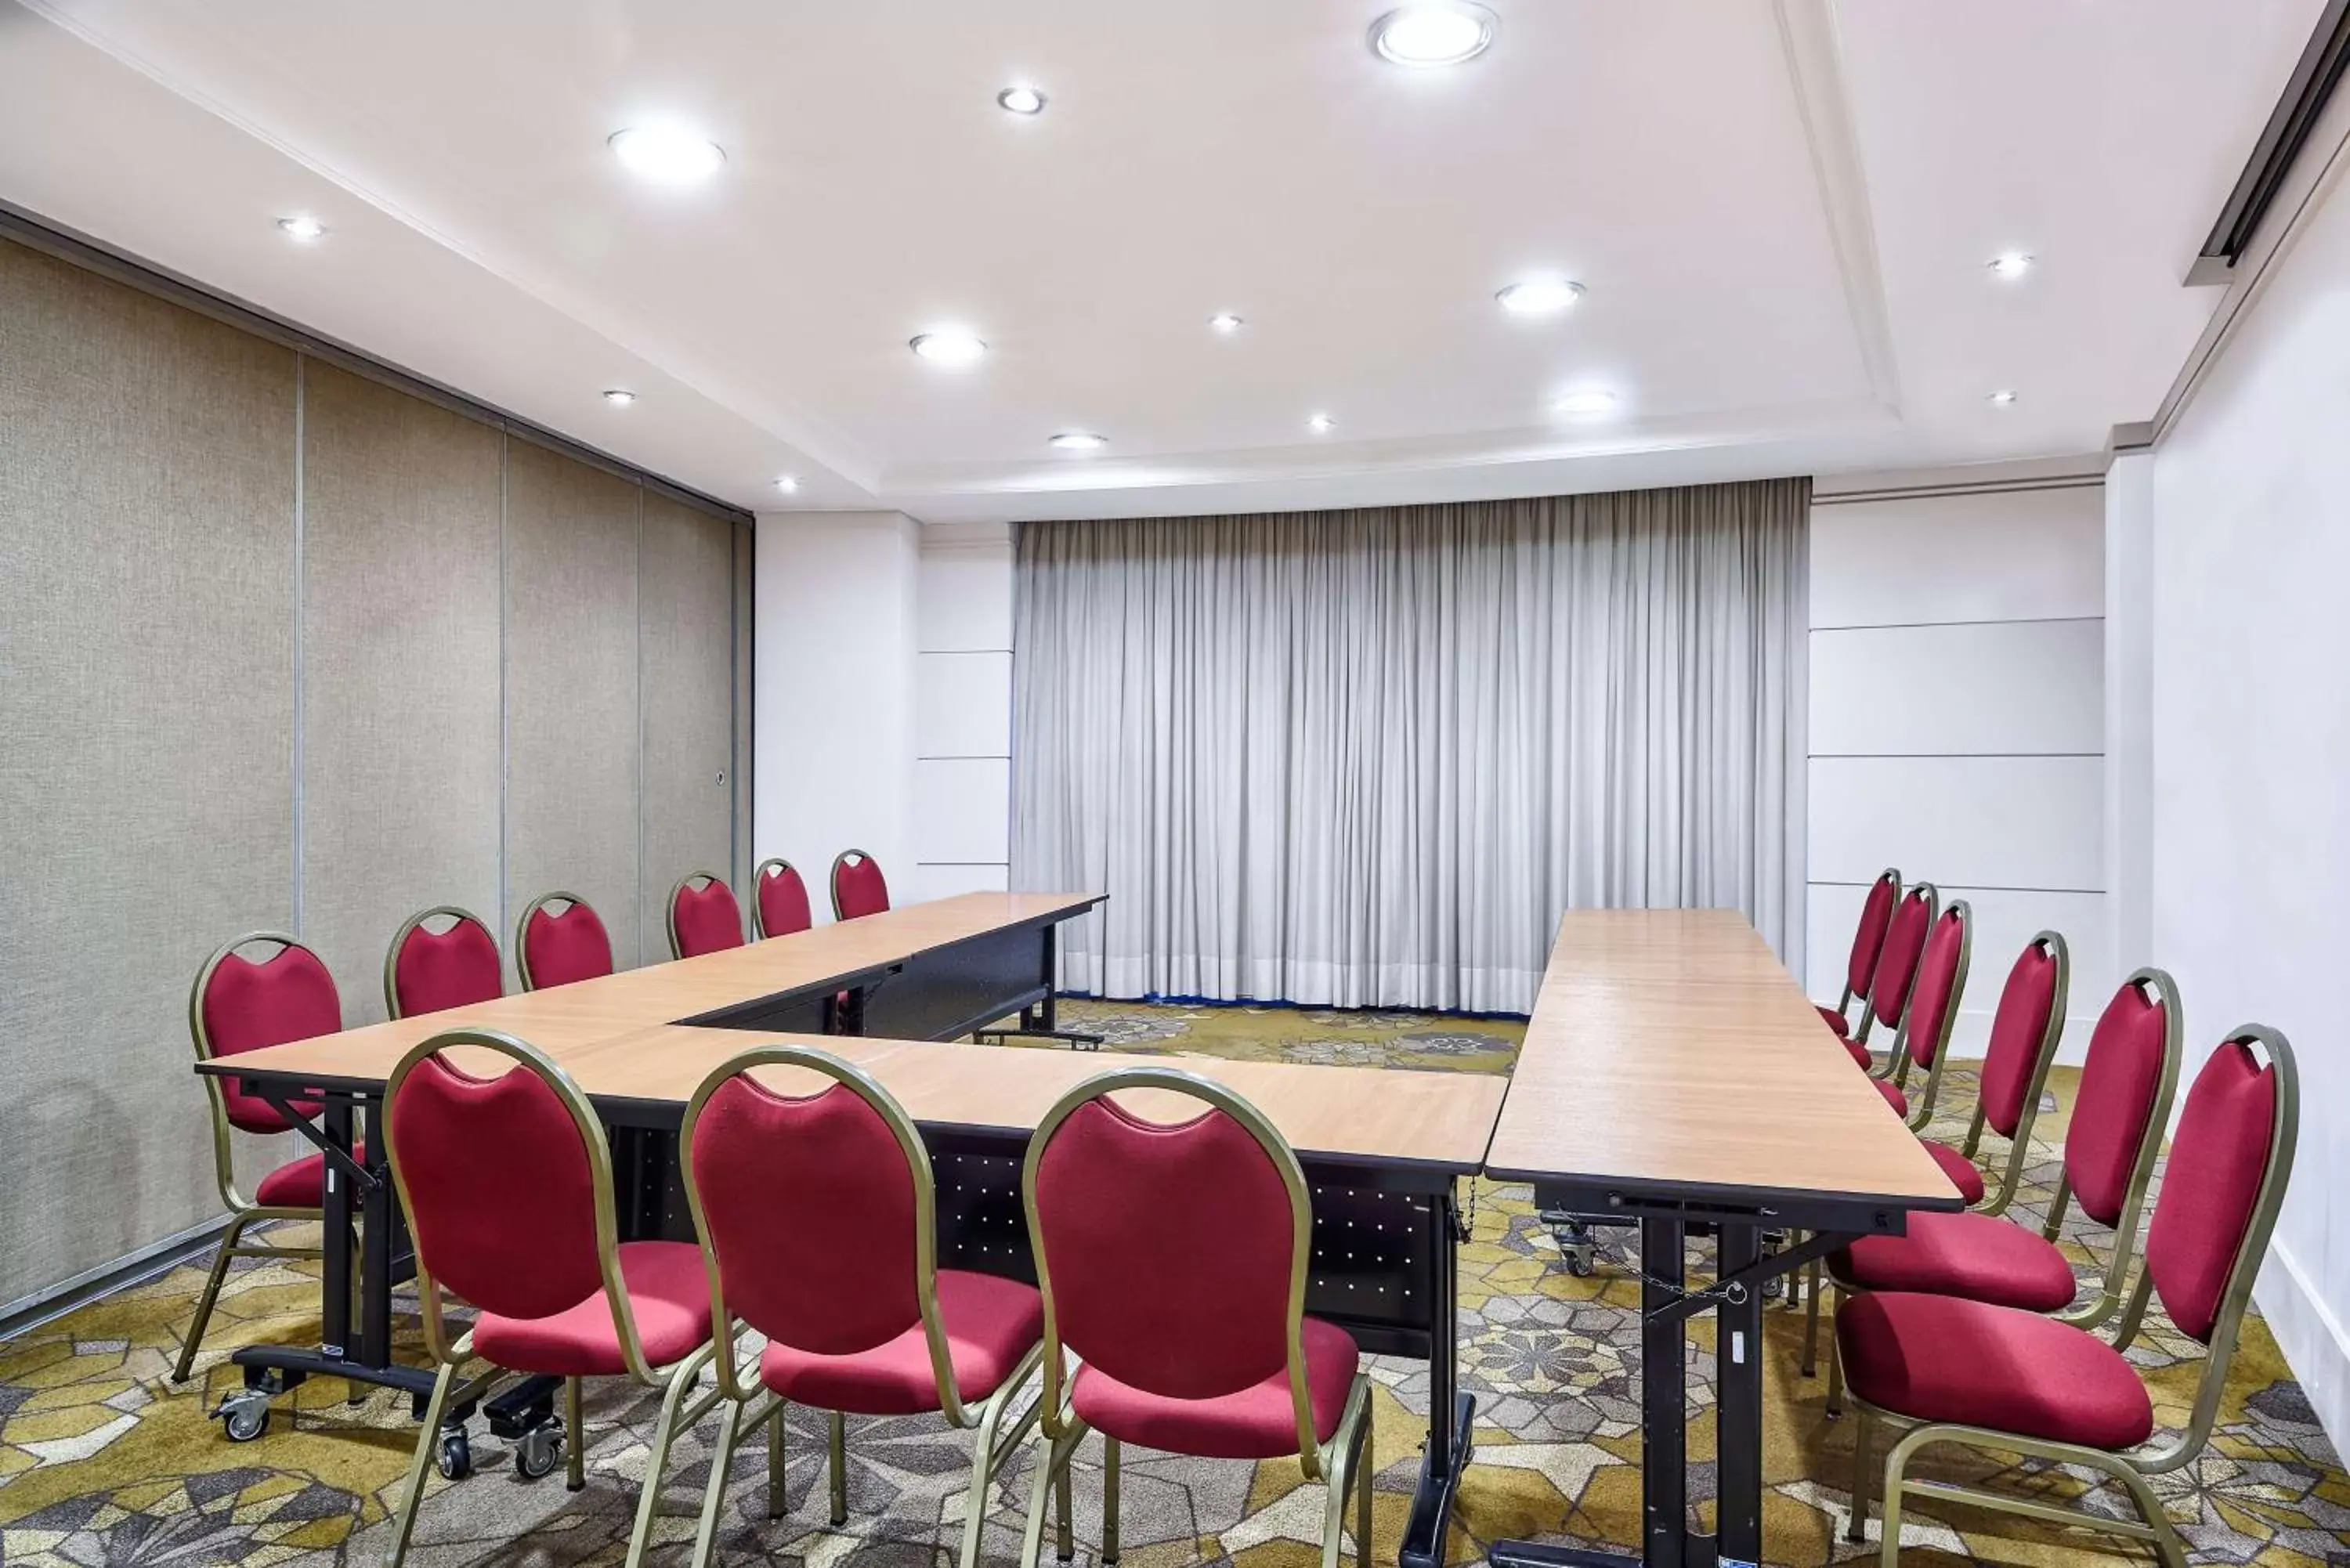 Meeting/conference room in Hilton Porto Alegre, Brazil